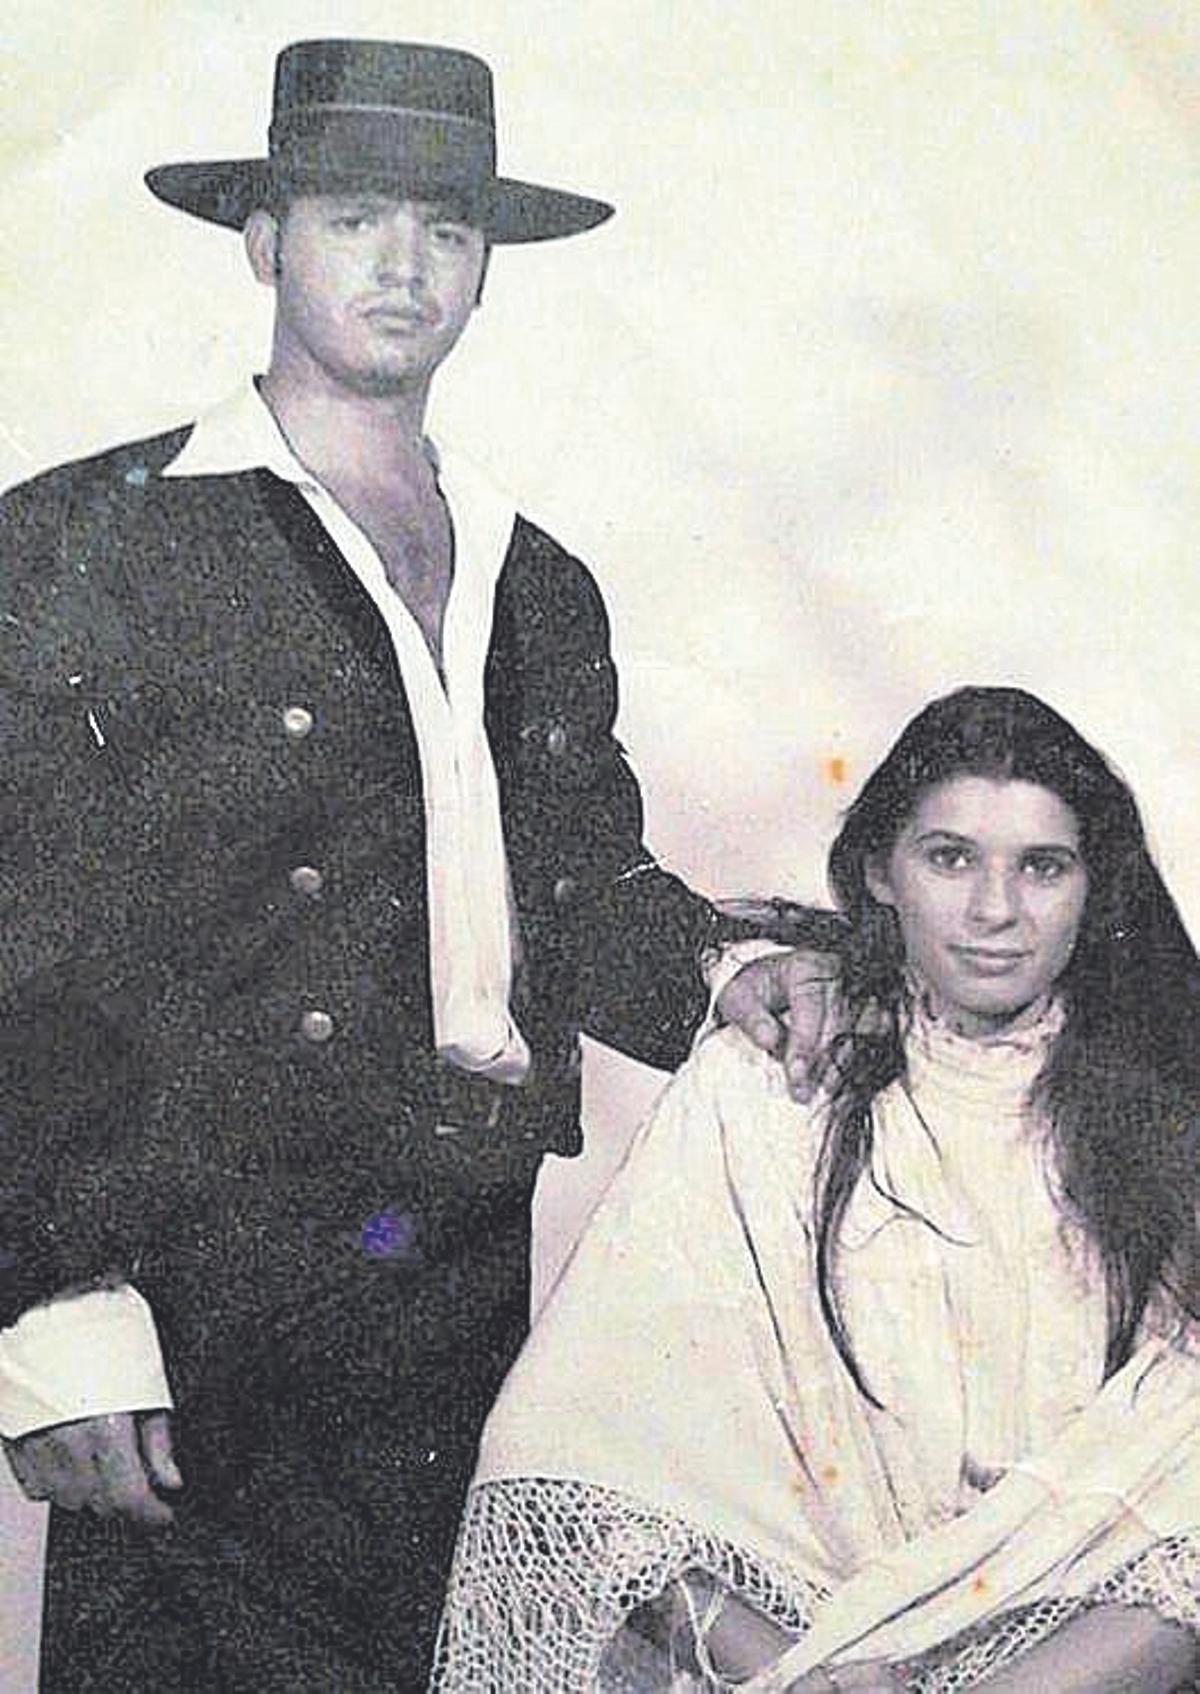 Una foto de feria, donde se conocieron Marcos Santiago y su señora.